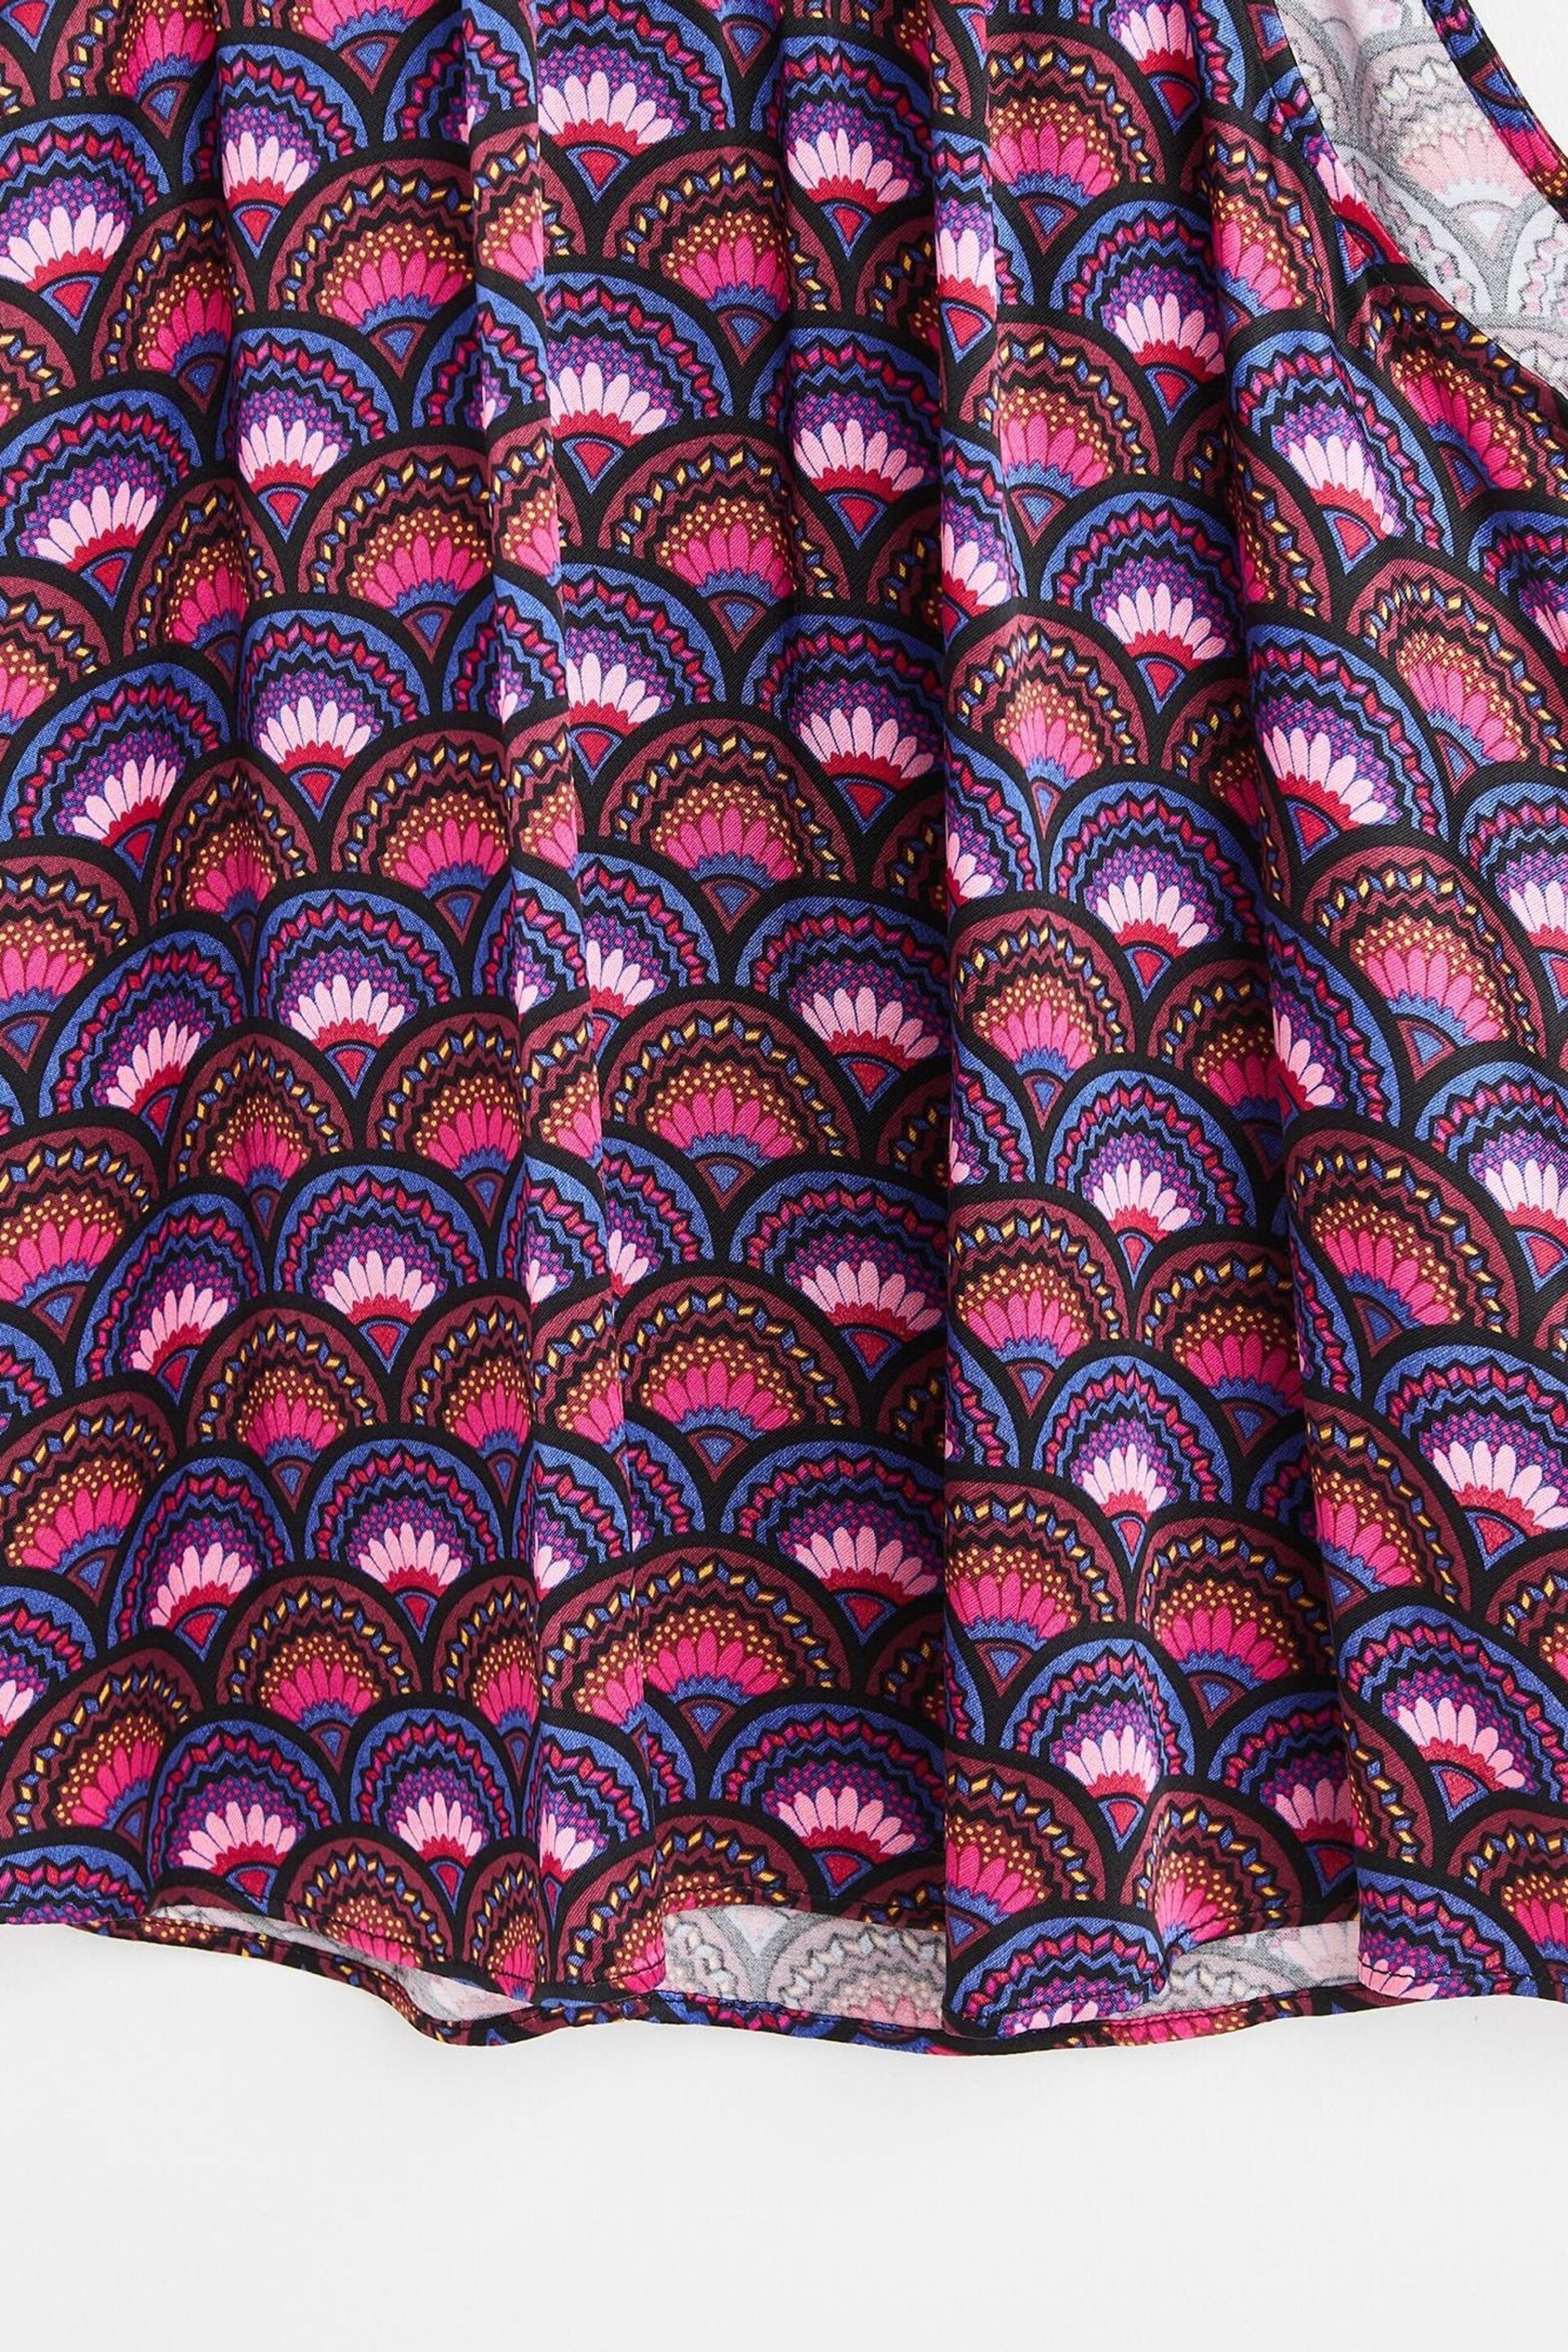 Oliver Bonas Pink Fan Print Halter Neck Blouse - Image 8 of 8